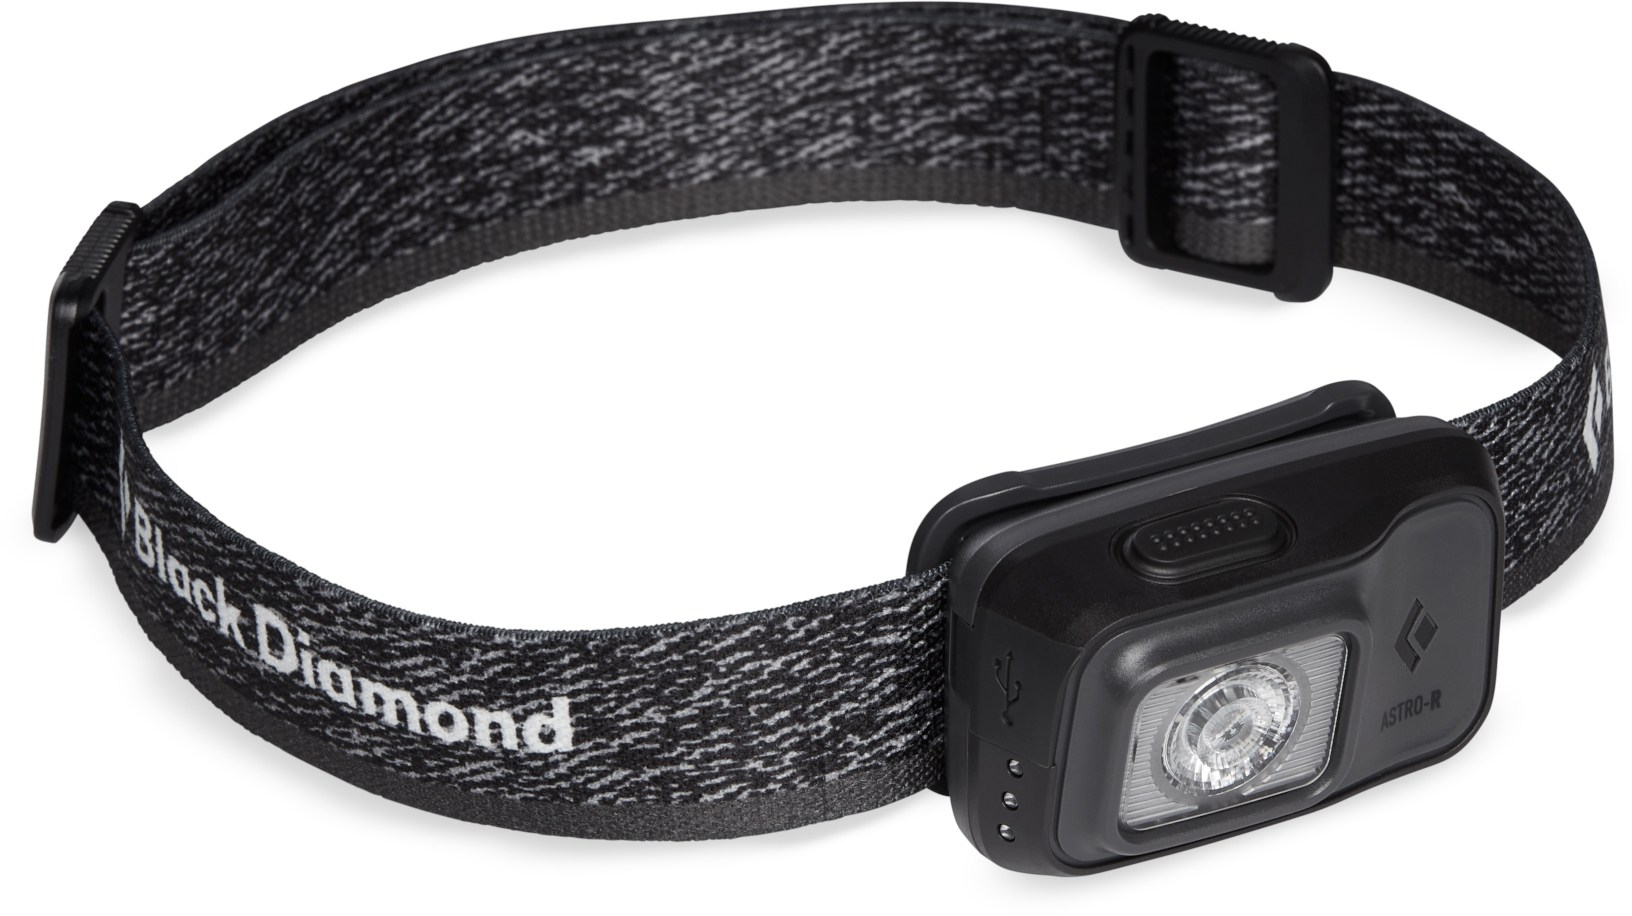 Налобный фонарь Astro 300-R Black Diamond, серый фонарь налобный сервис ключ